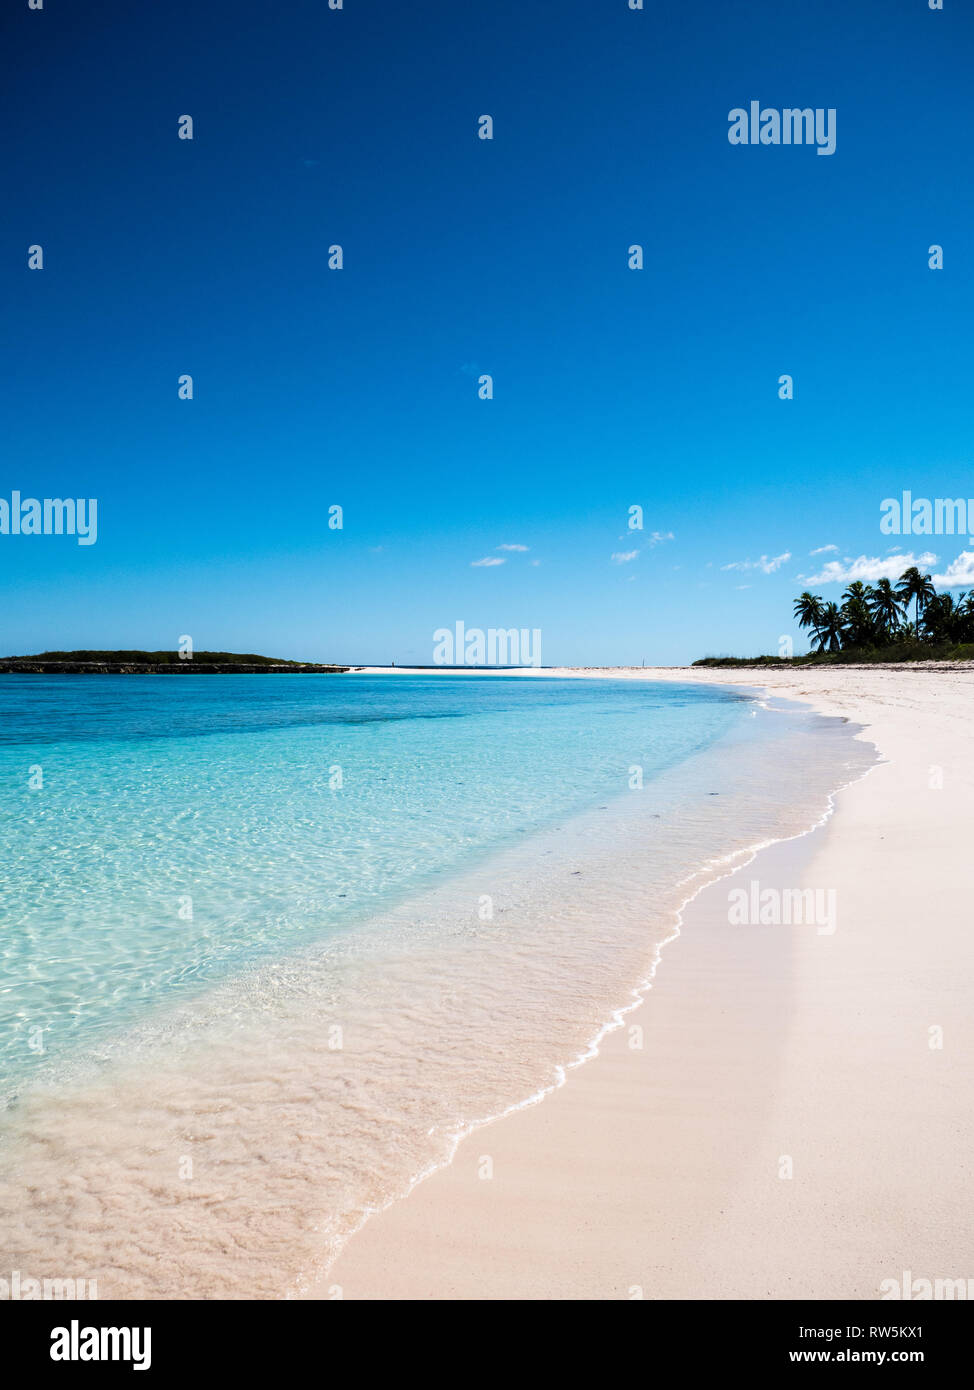 L'île de corail tropical à anses double plage, gouverneurs Harbour, Île Eleuthera, aux Bahamas, dans les Caraïbes. Banque D'Images